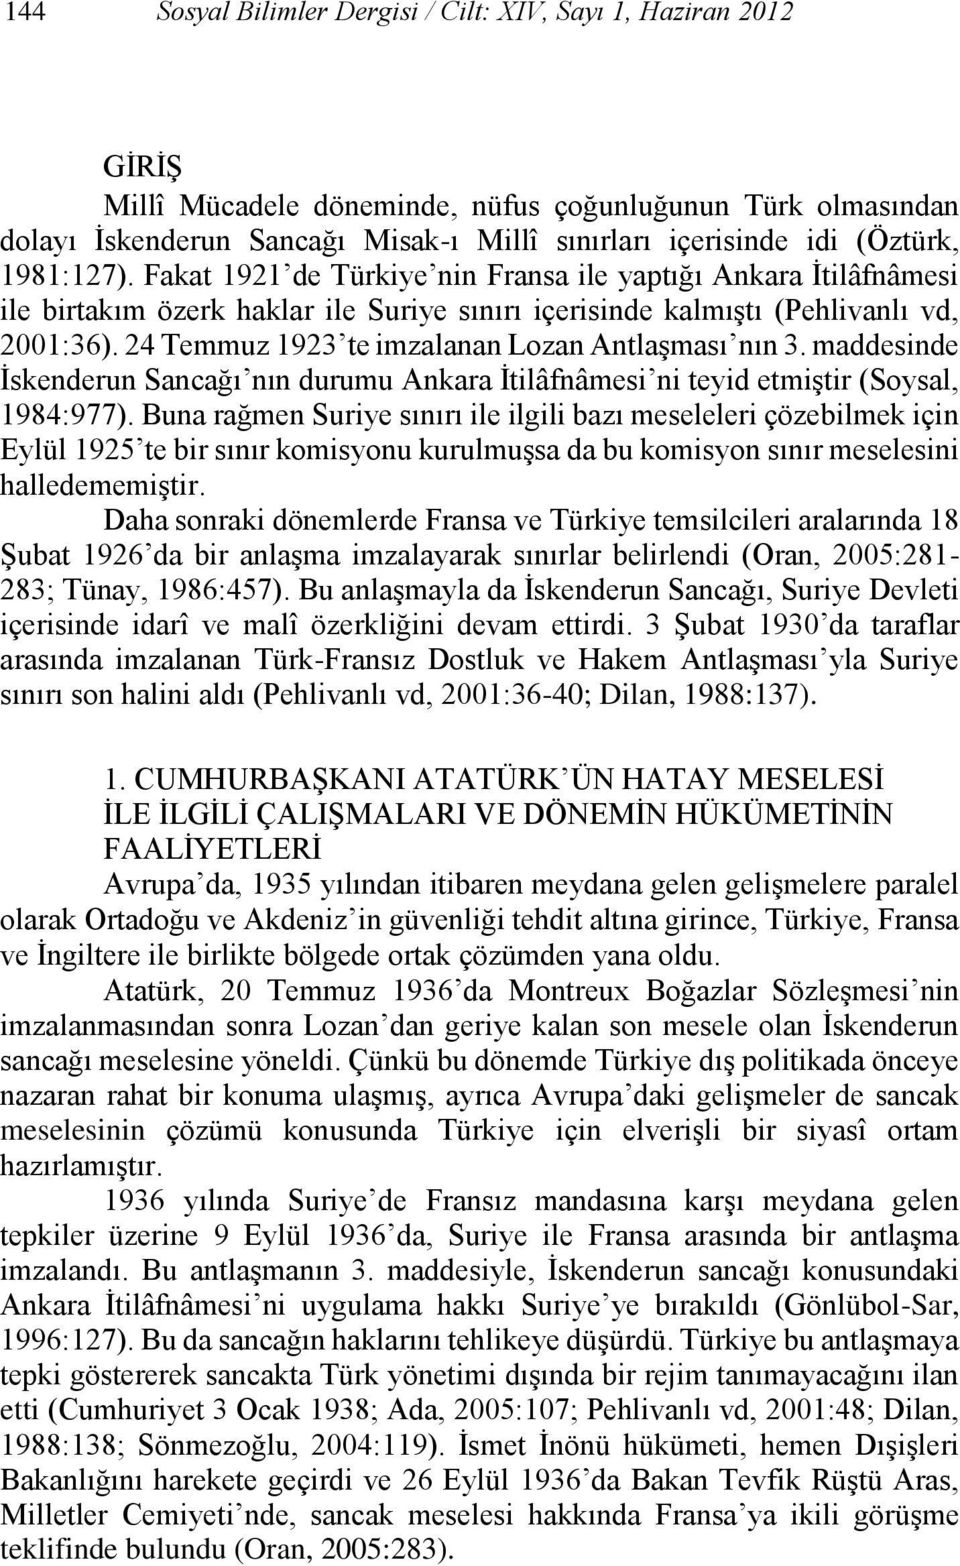 24 Temmuz 1923 te imzalanan Lozan Antlaşması nın 3. maddesinde İskenderun Sancağı nın durumu Ankara İtilâfnâmesi ni teyid etmiştir (Soysal, 1984:977).